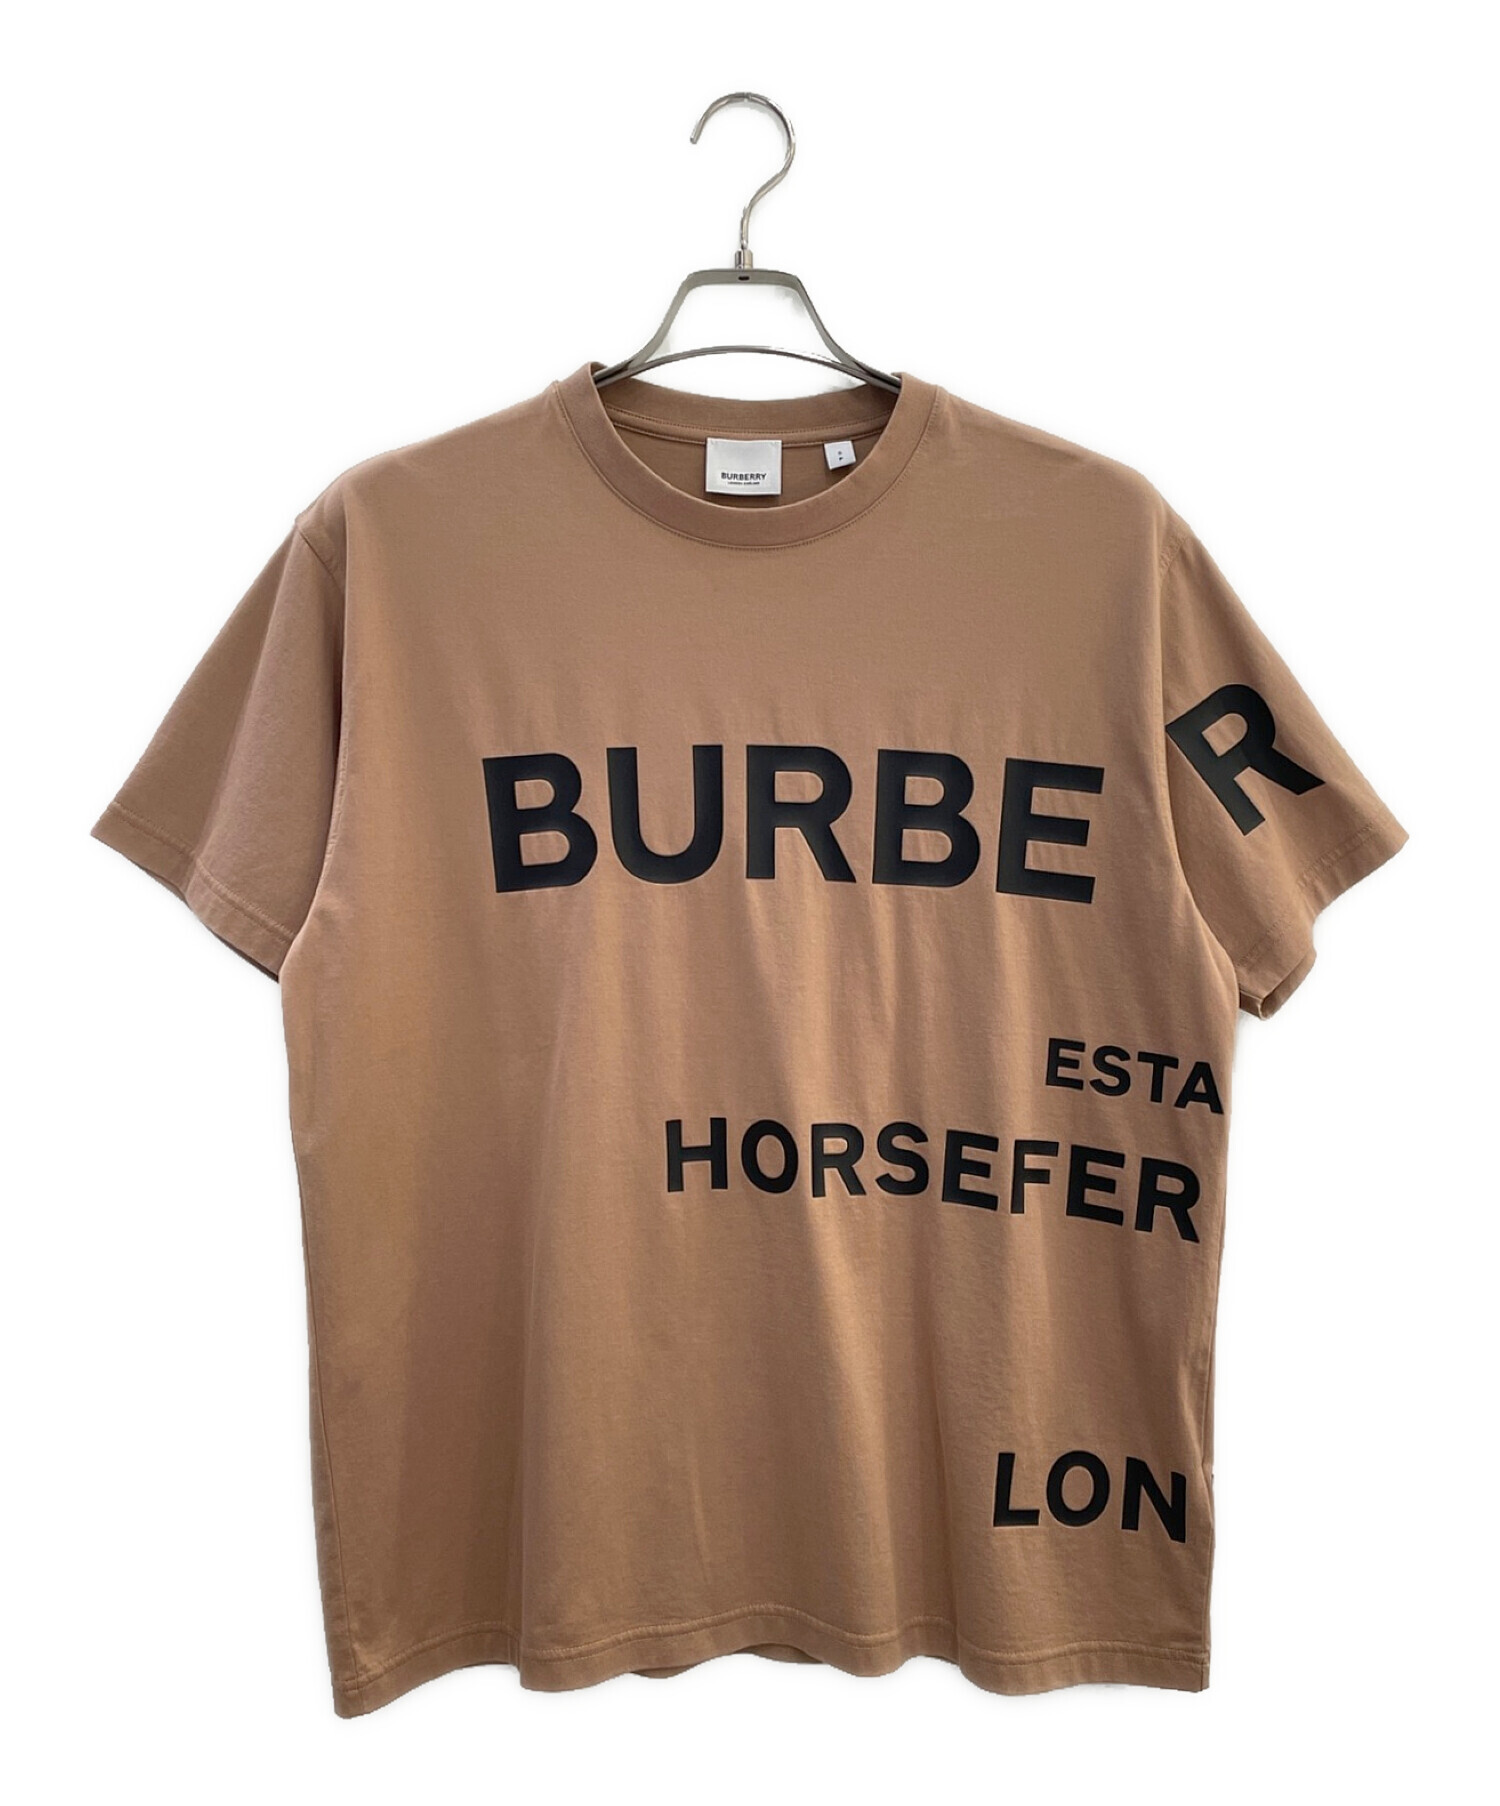 チャンピオン Burberry バーバリー Tシャツ コットン ホースフェリー S 